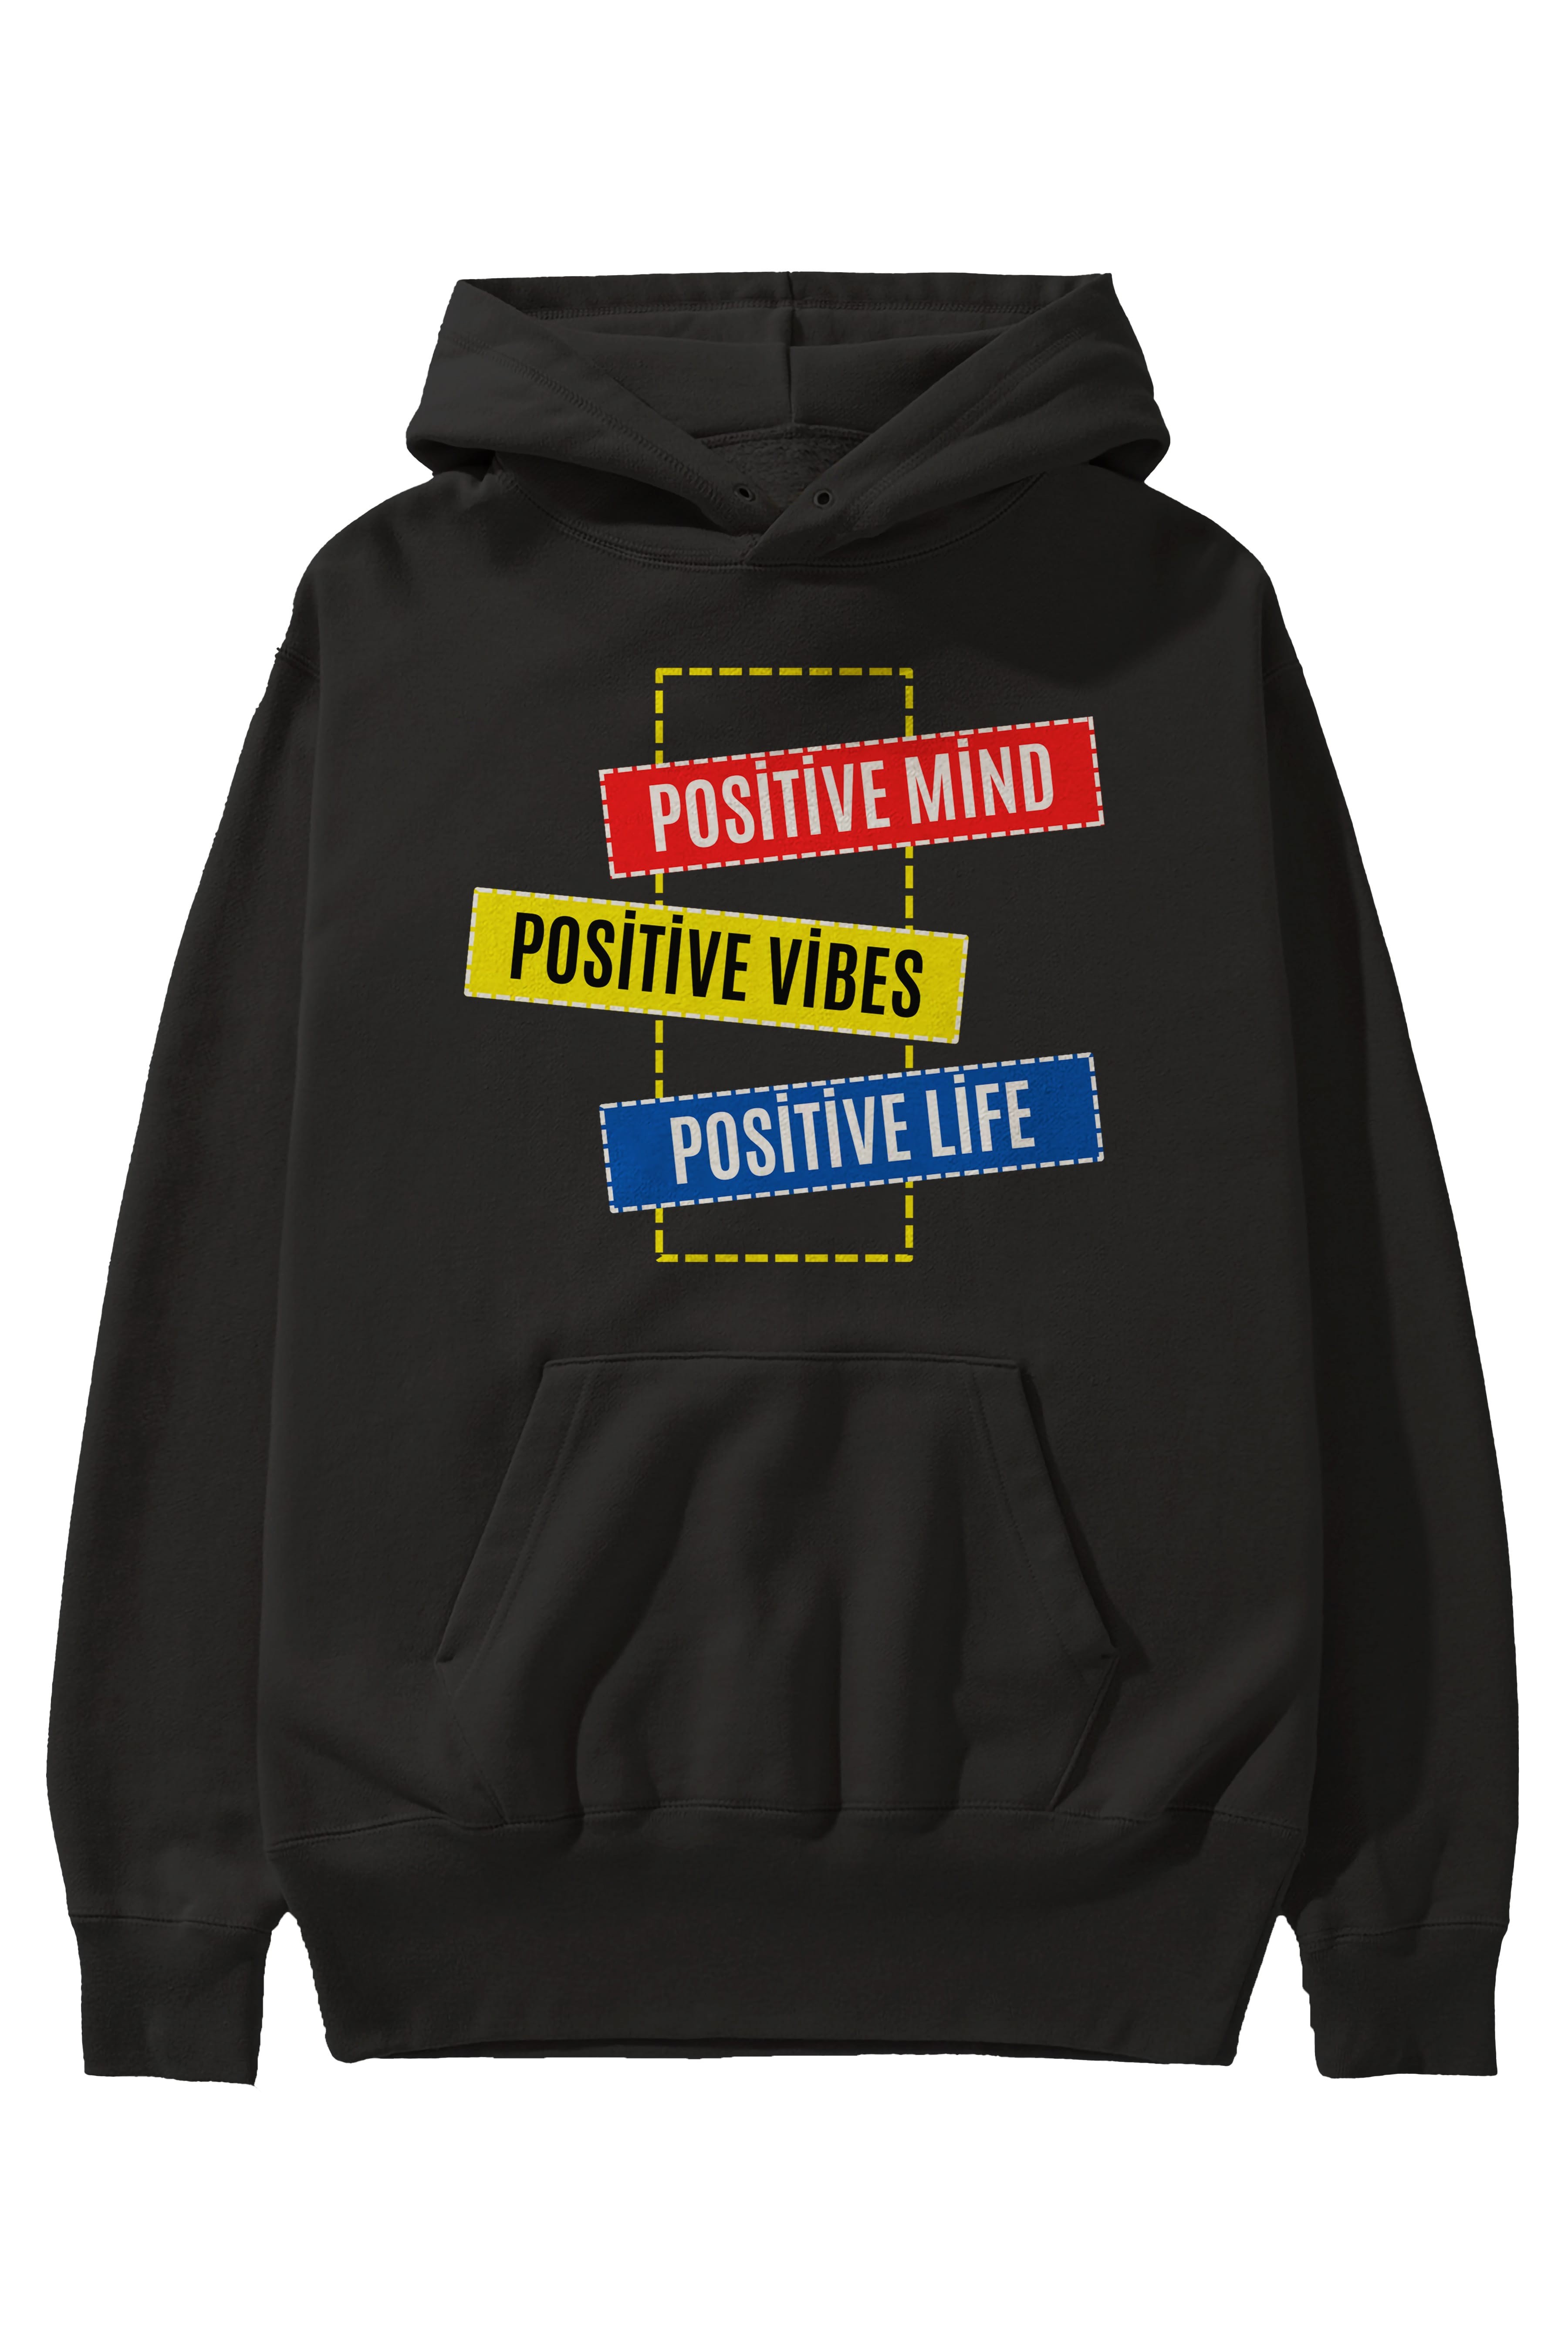 Positive Mind Vibes Lifes Ön Baskılı Oversize Hoodie Kapüşonlu Sweatshirt Erkek Kadın Unisex